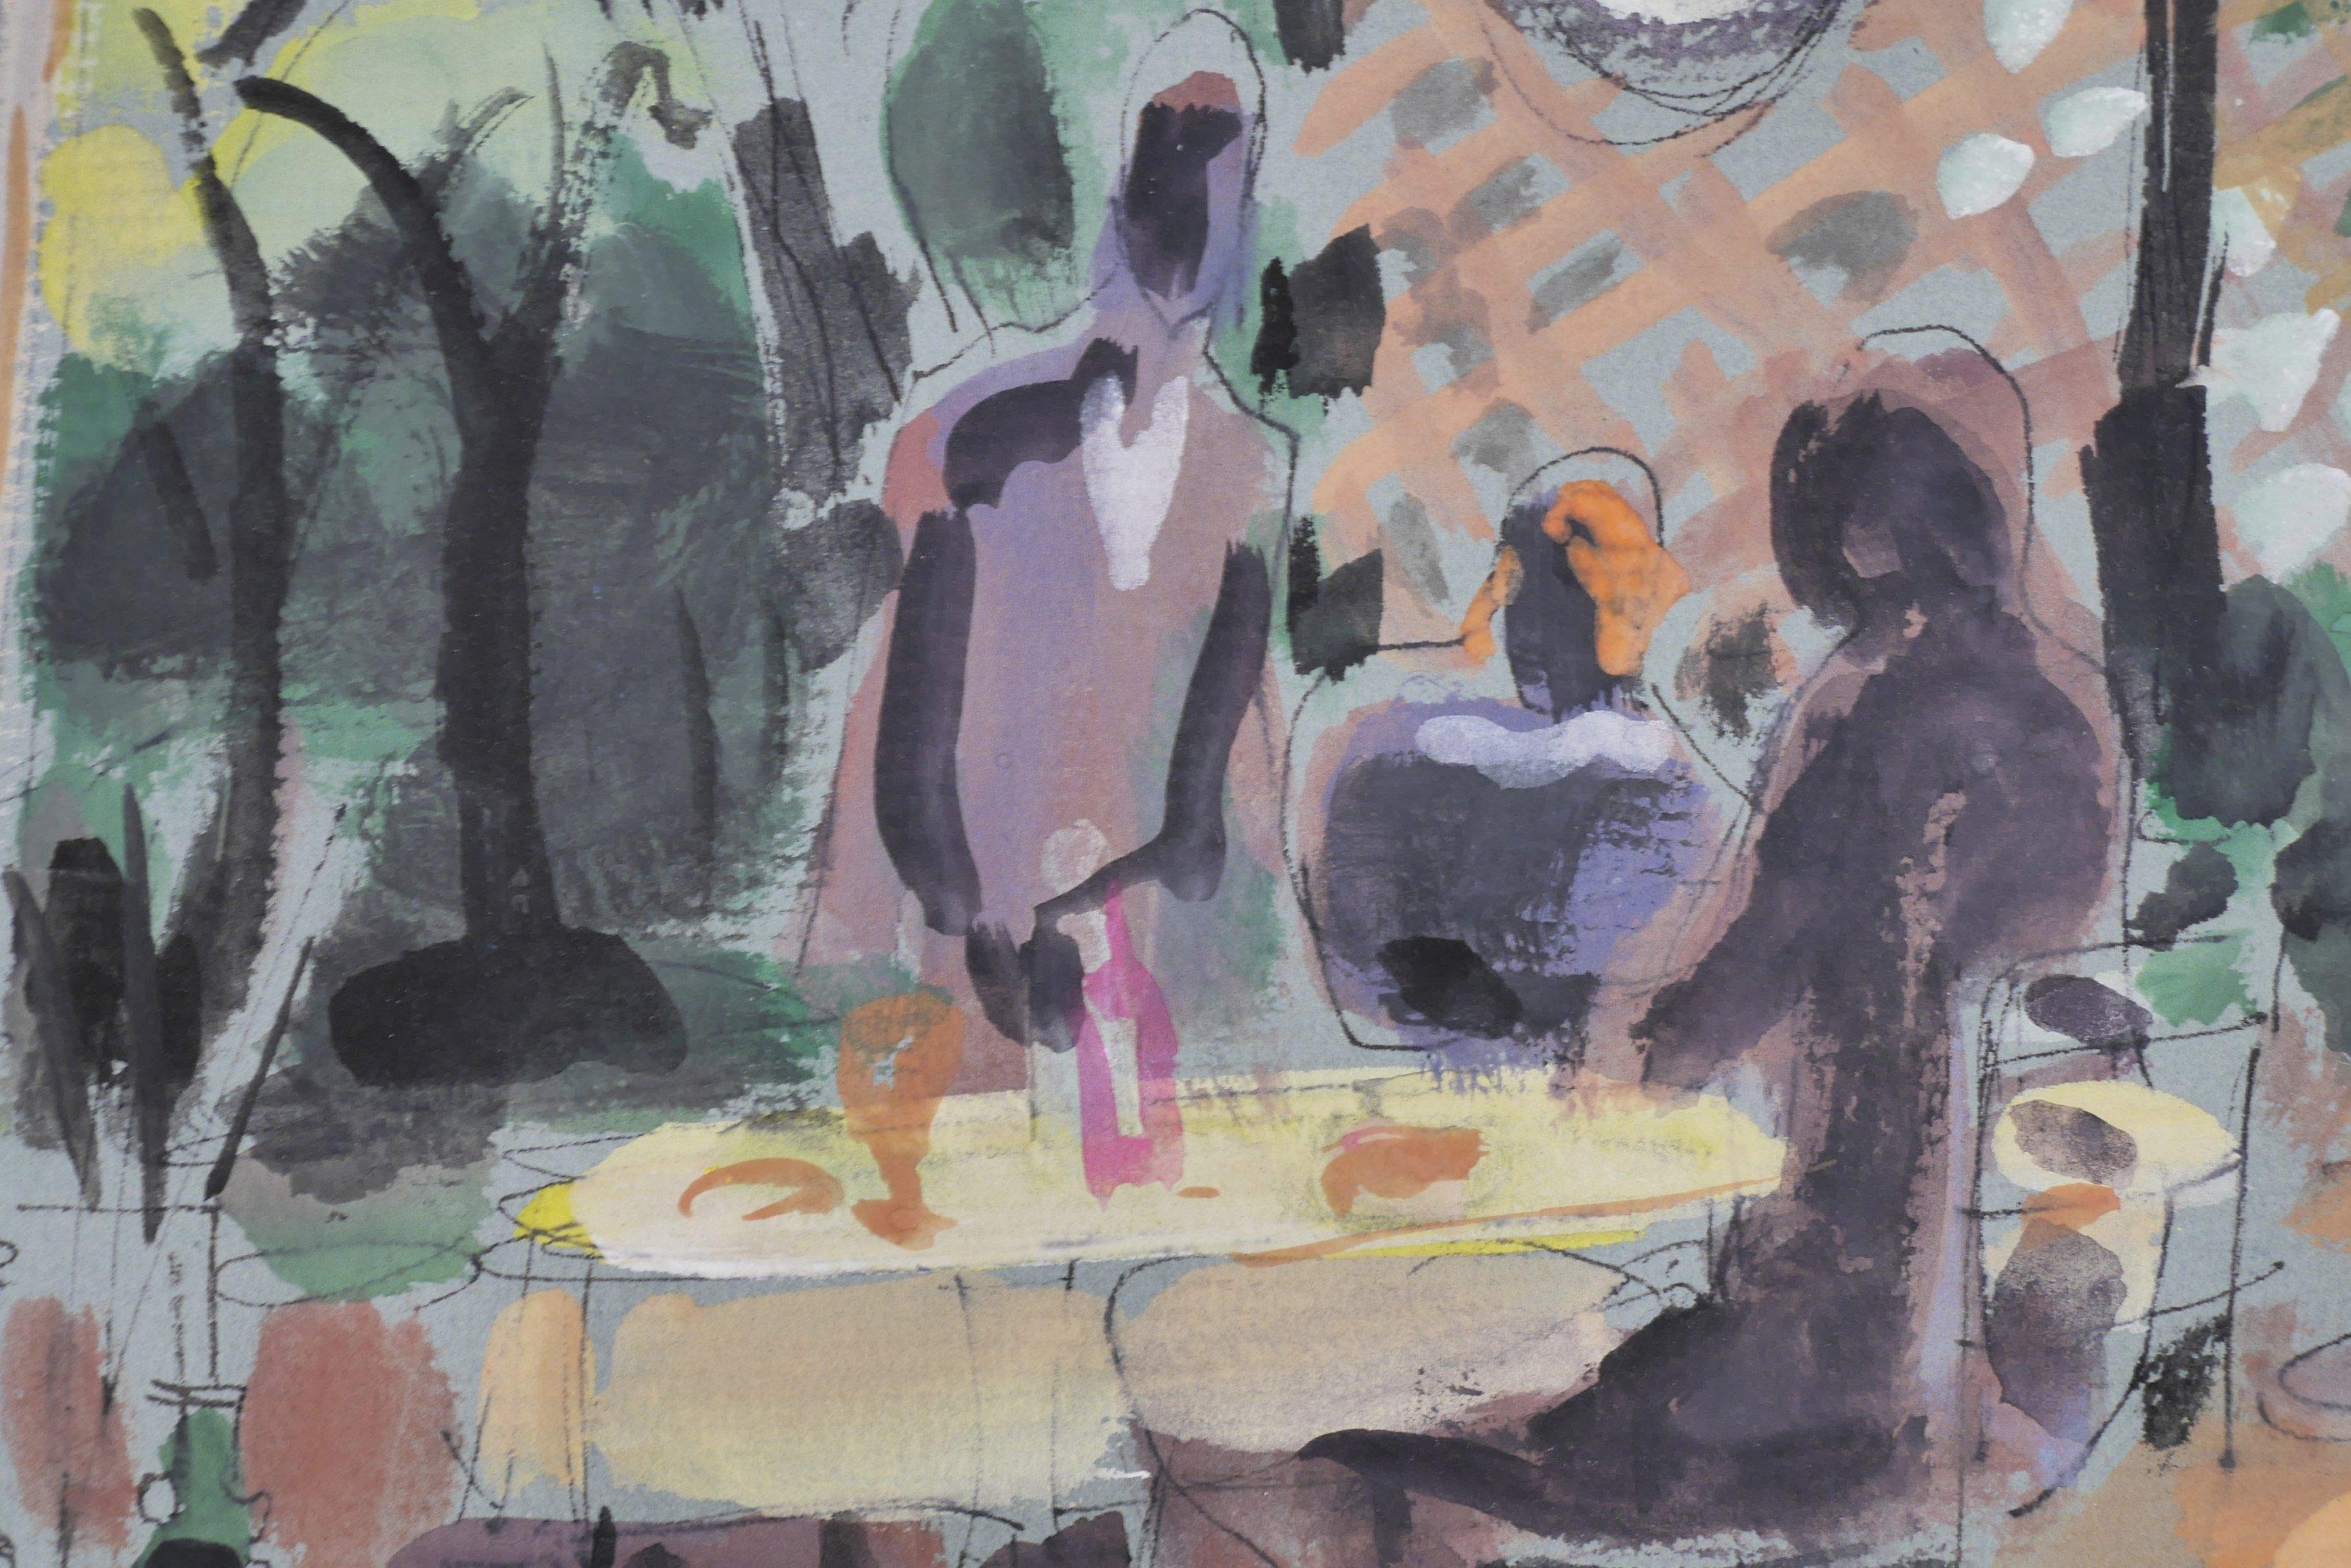 Algesa O'Sickey (Amerikanerin, 1917-2006)
Frau Gemälde
Aquarell und Tinte auf grünem Papier
Vorzeichenlos
9 x 12 Zoll
13,75 x 16 Zoll, gerahmt

Algesa D'Agostino, geboren am 4. Juni 1917, wurde in Uganda geboren. Im Jahr 1929 zog sie nach Cleveland